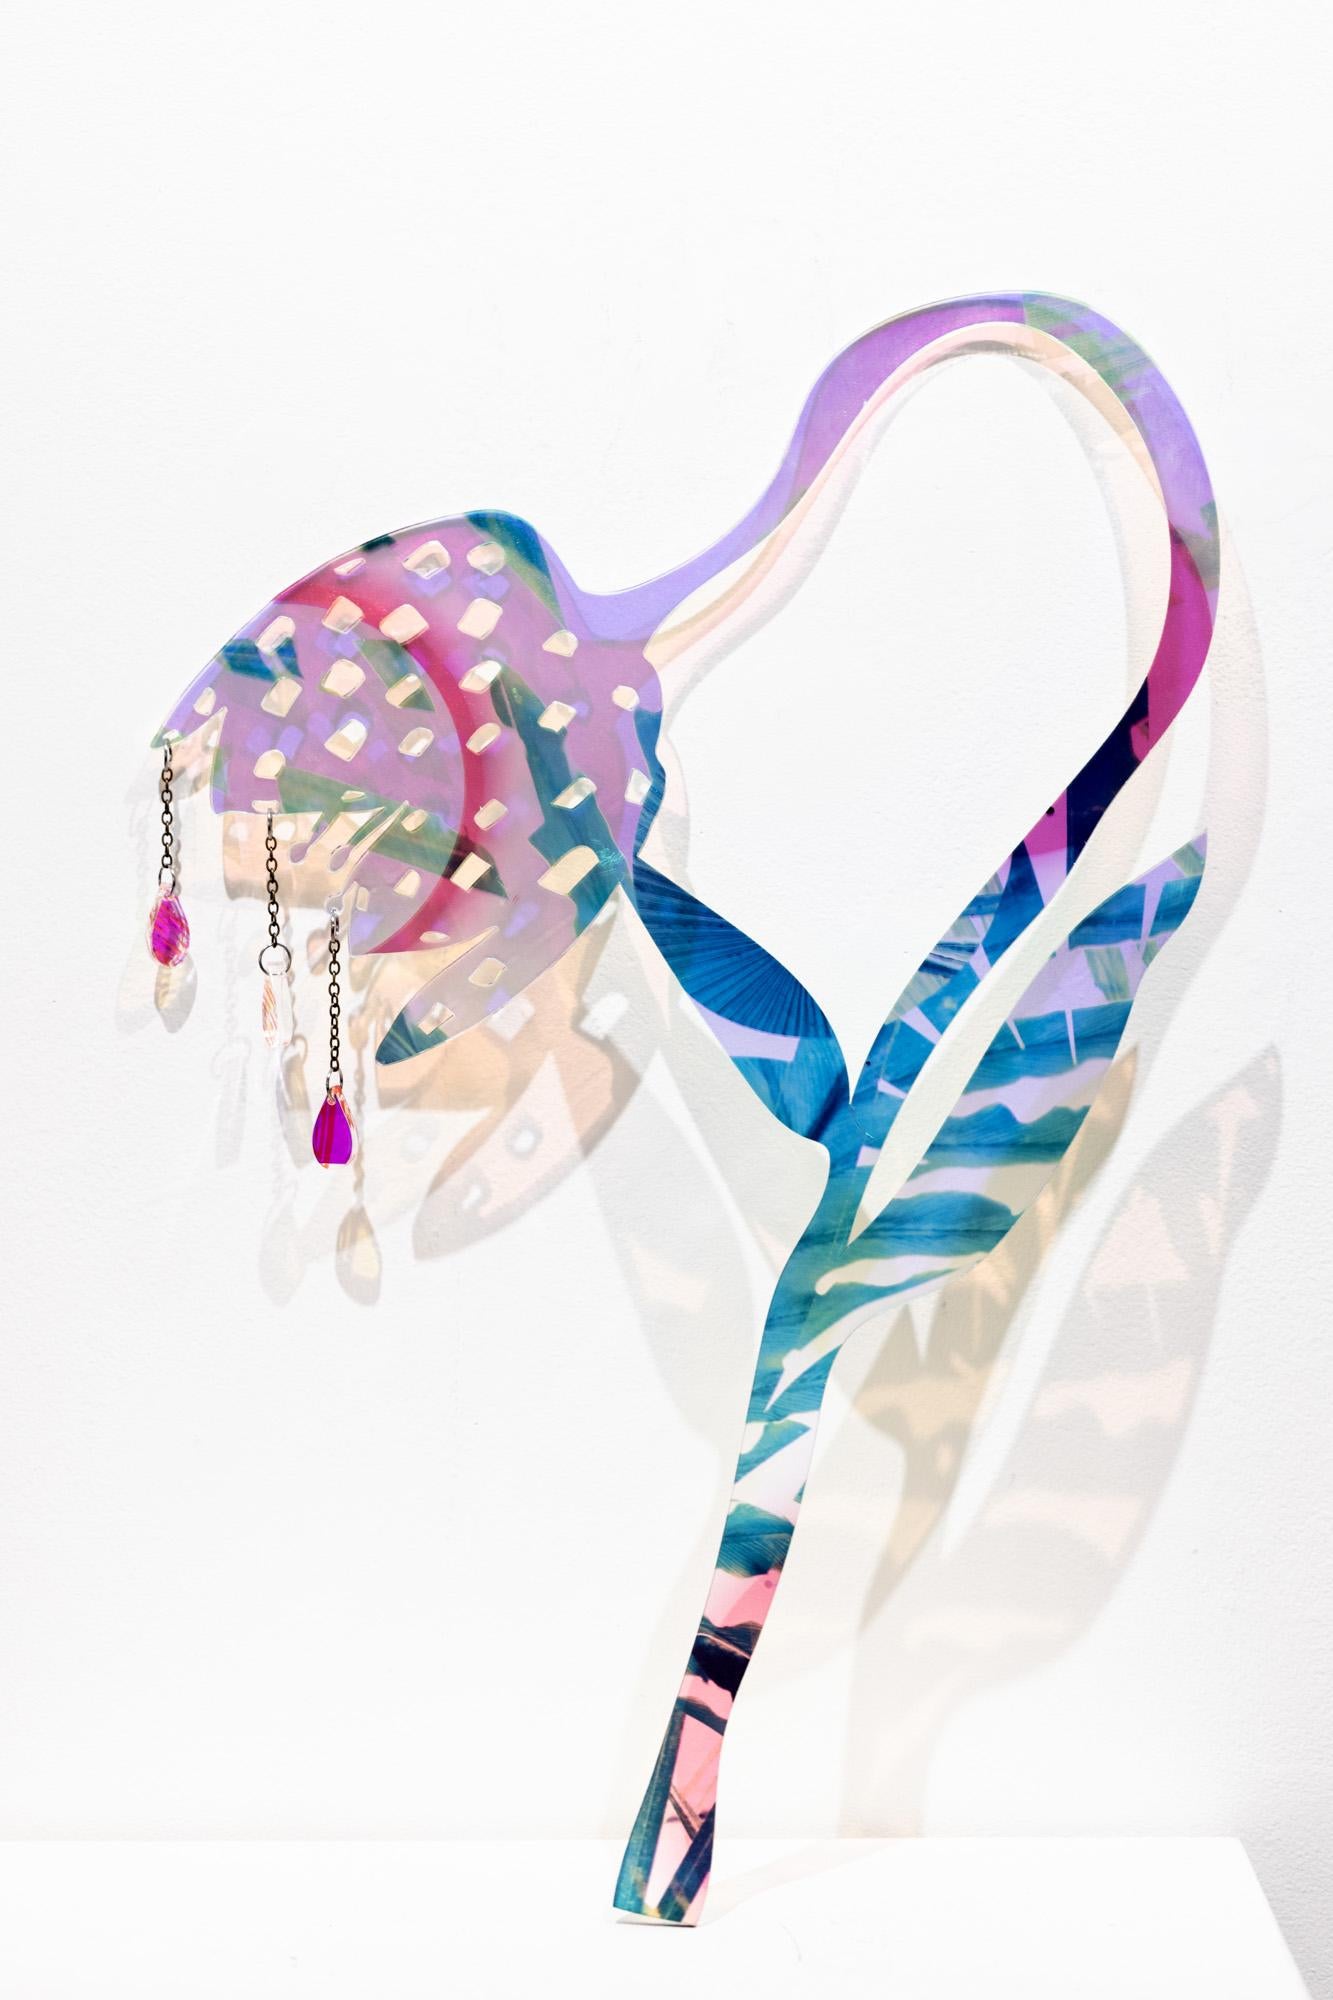 Still-Life Sculpture Roxana Azar - « Lily à carreaux hélicoïdaux » - Sculpture abstraite UV sur acrylique